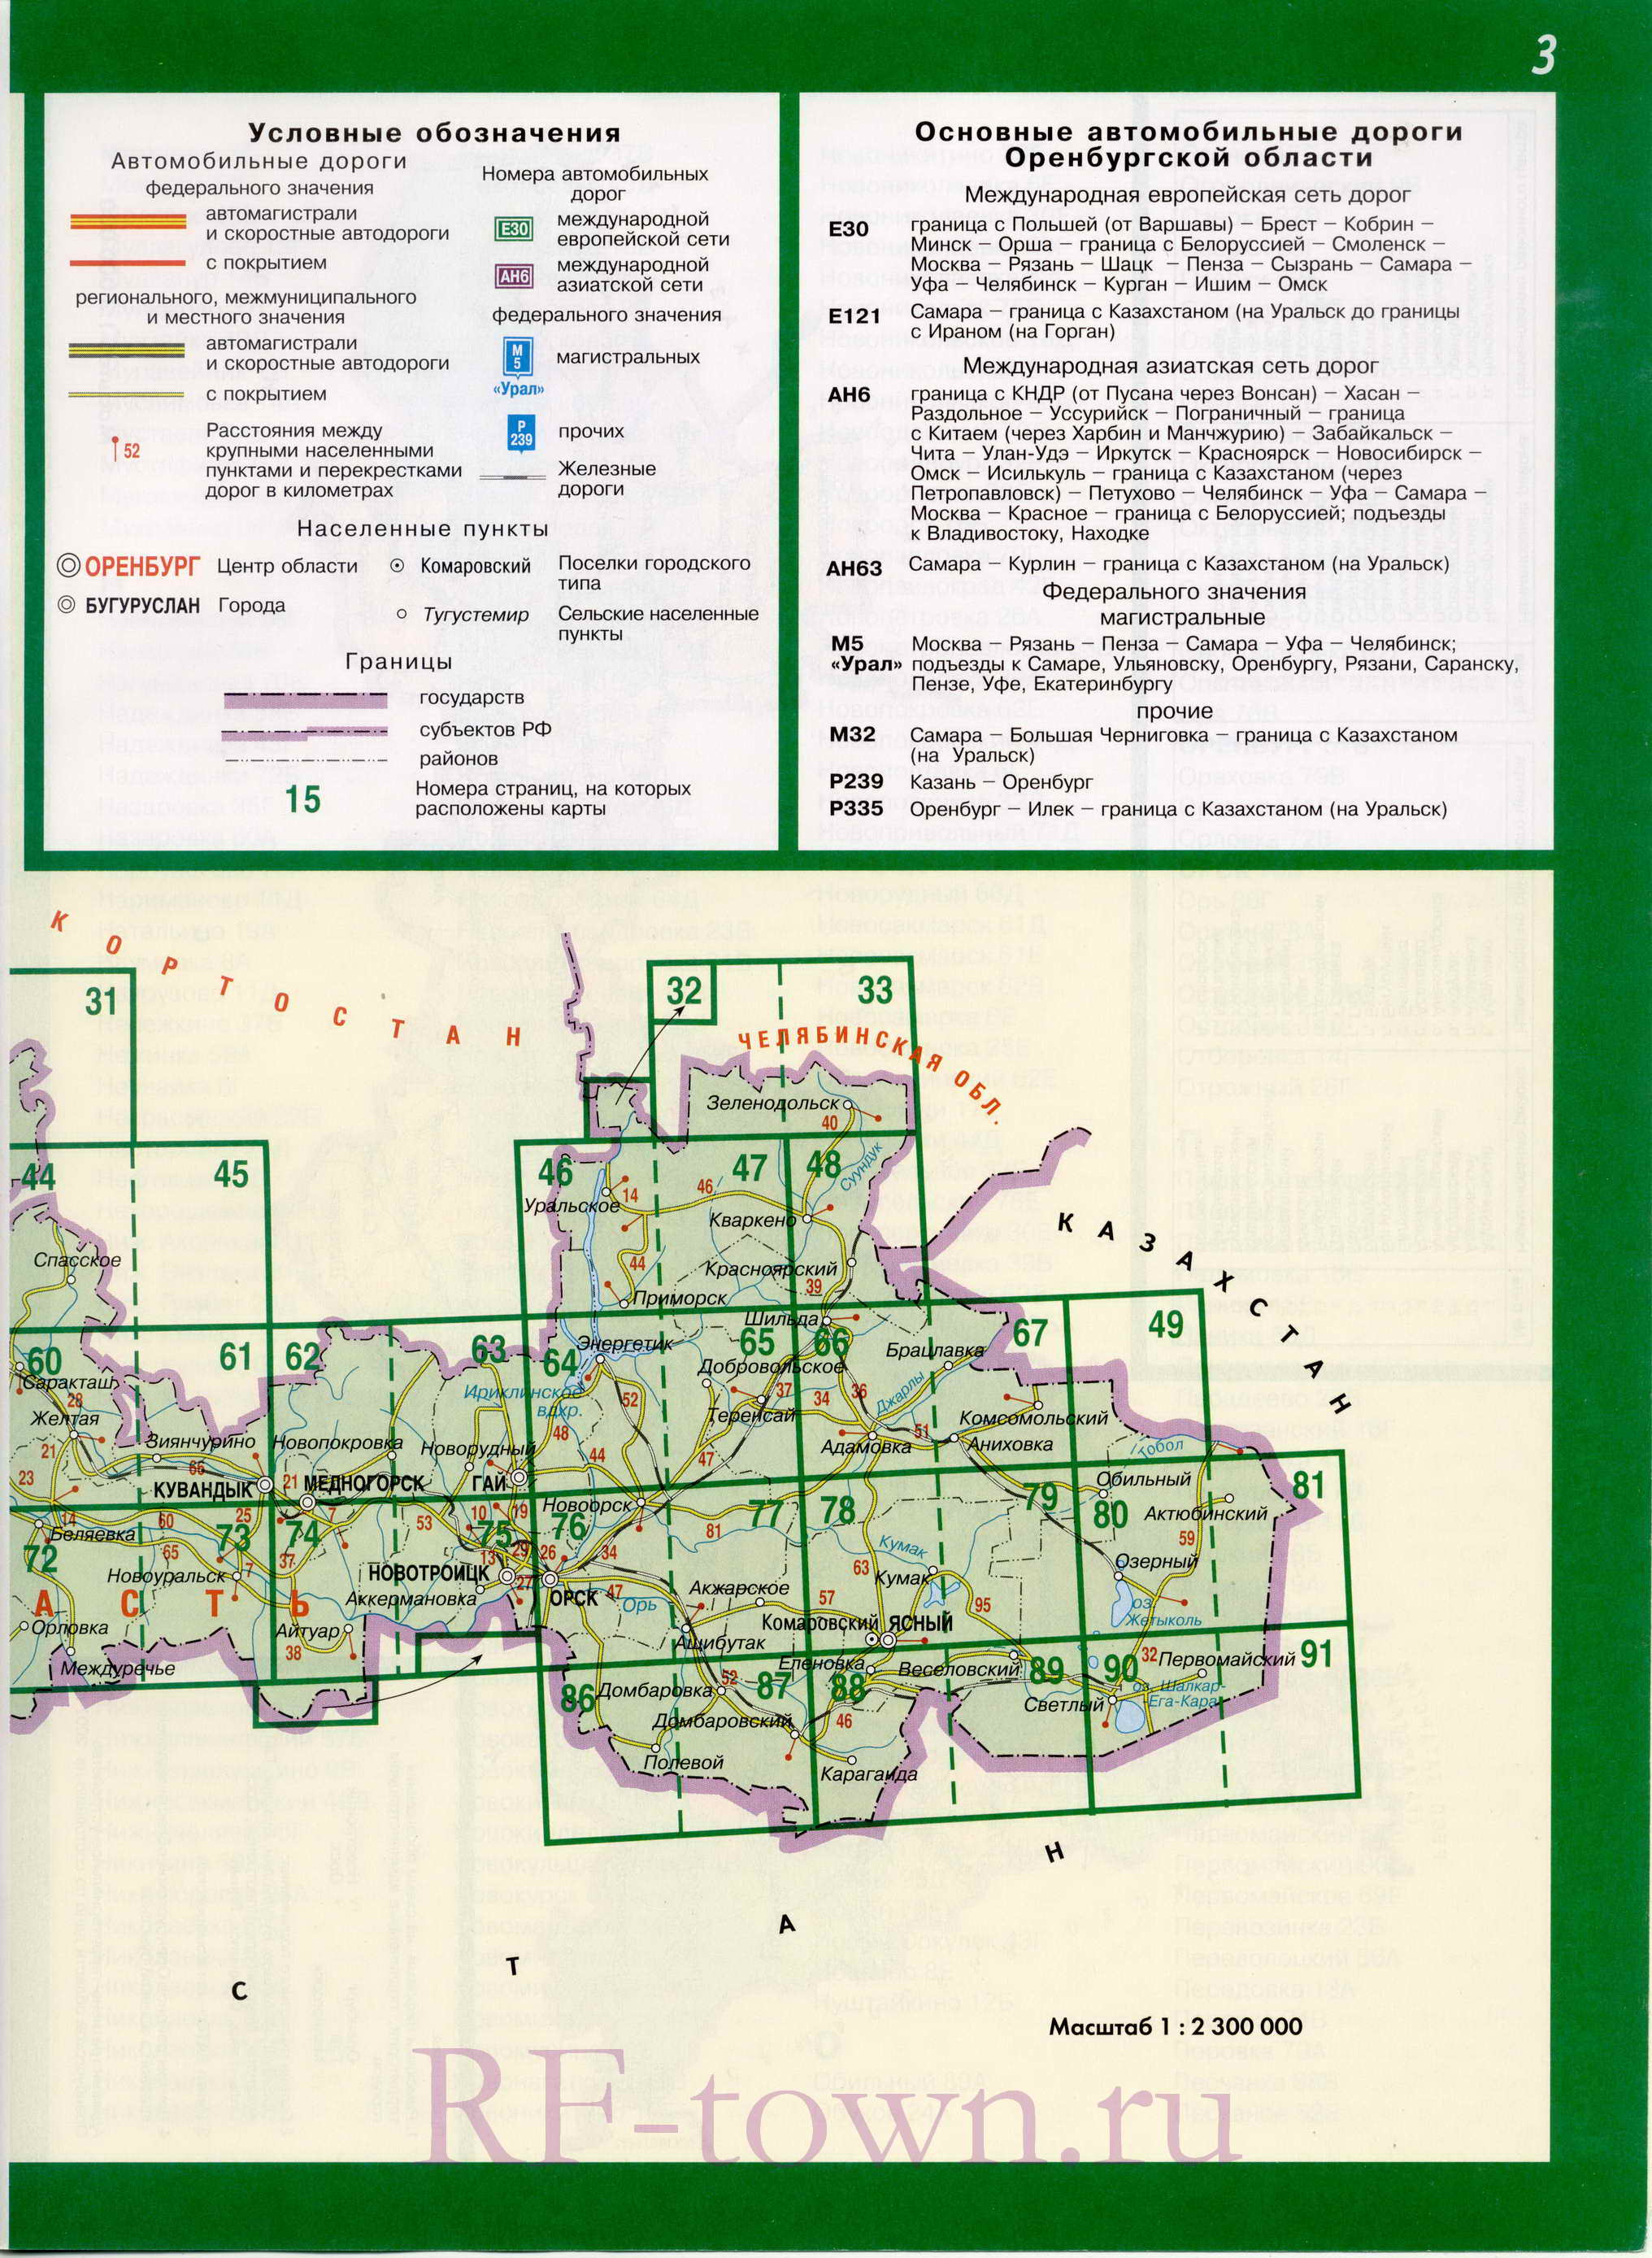  Автомобильная карта Оренбургской области. Подробная карта автомобильных дорог Оренбургской области масштаба 1см:23км, B0 - 